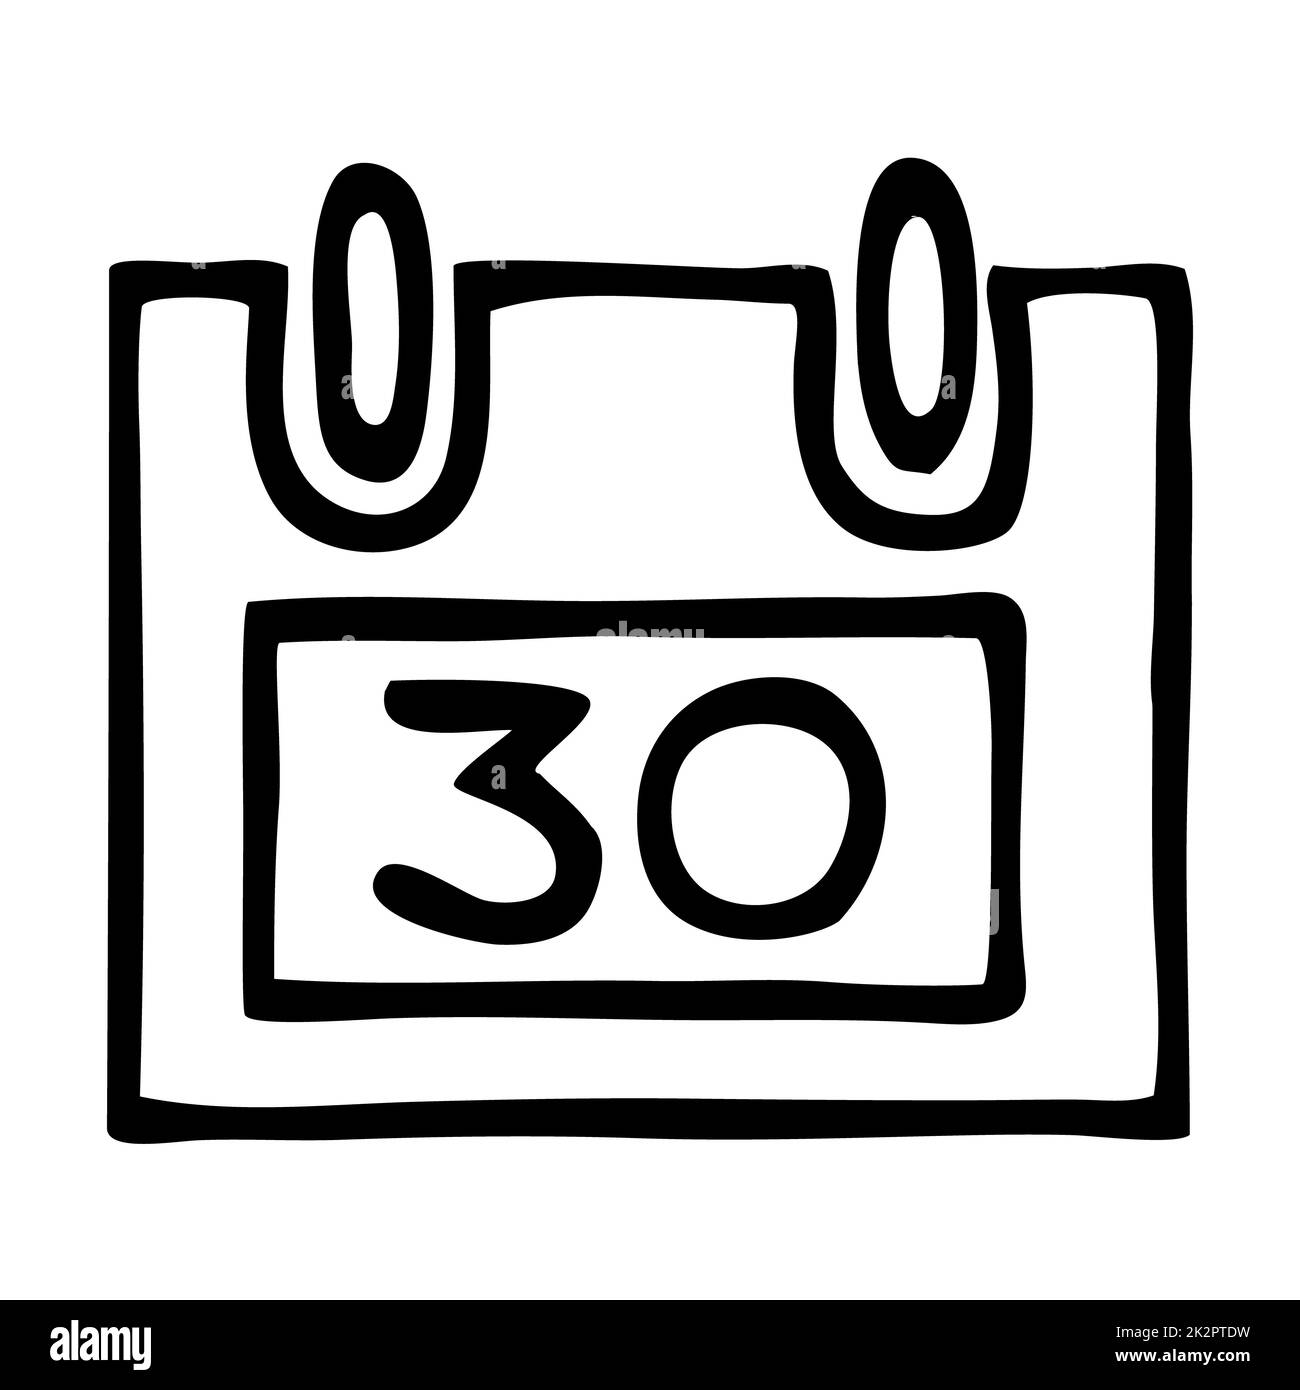 Icona o logo del calendario Doodle fine mese, disegnata a mano con sottile linea nera. Foto Stock